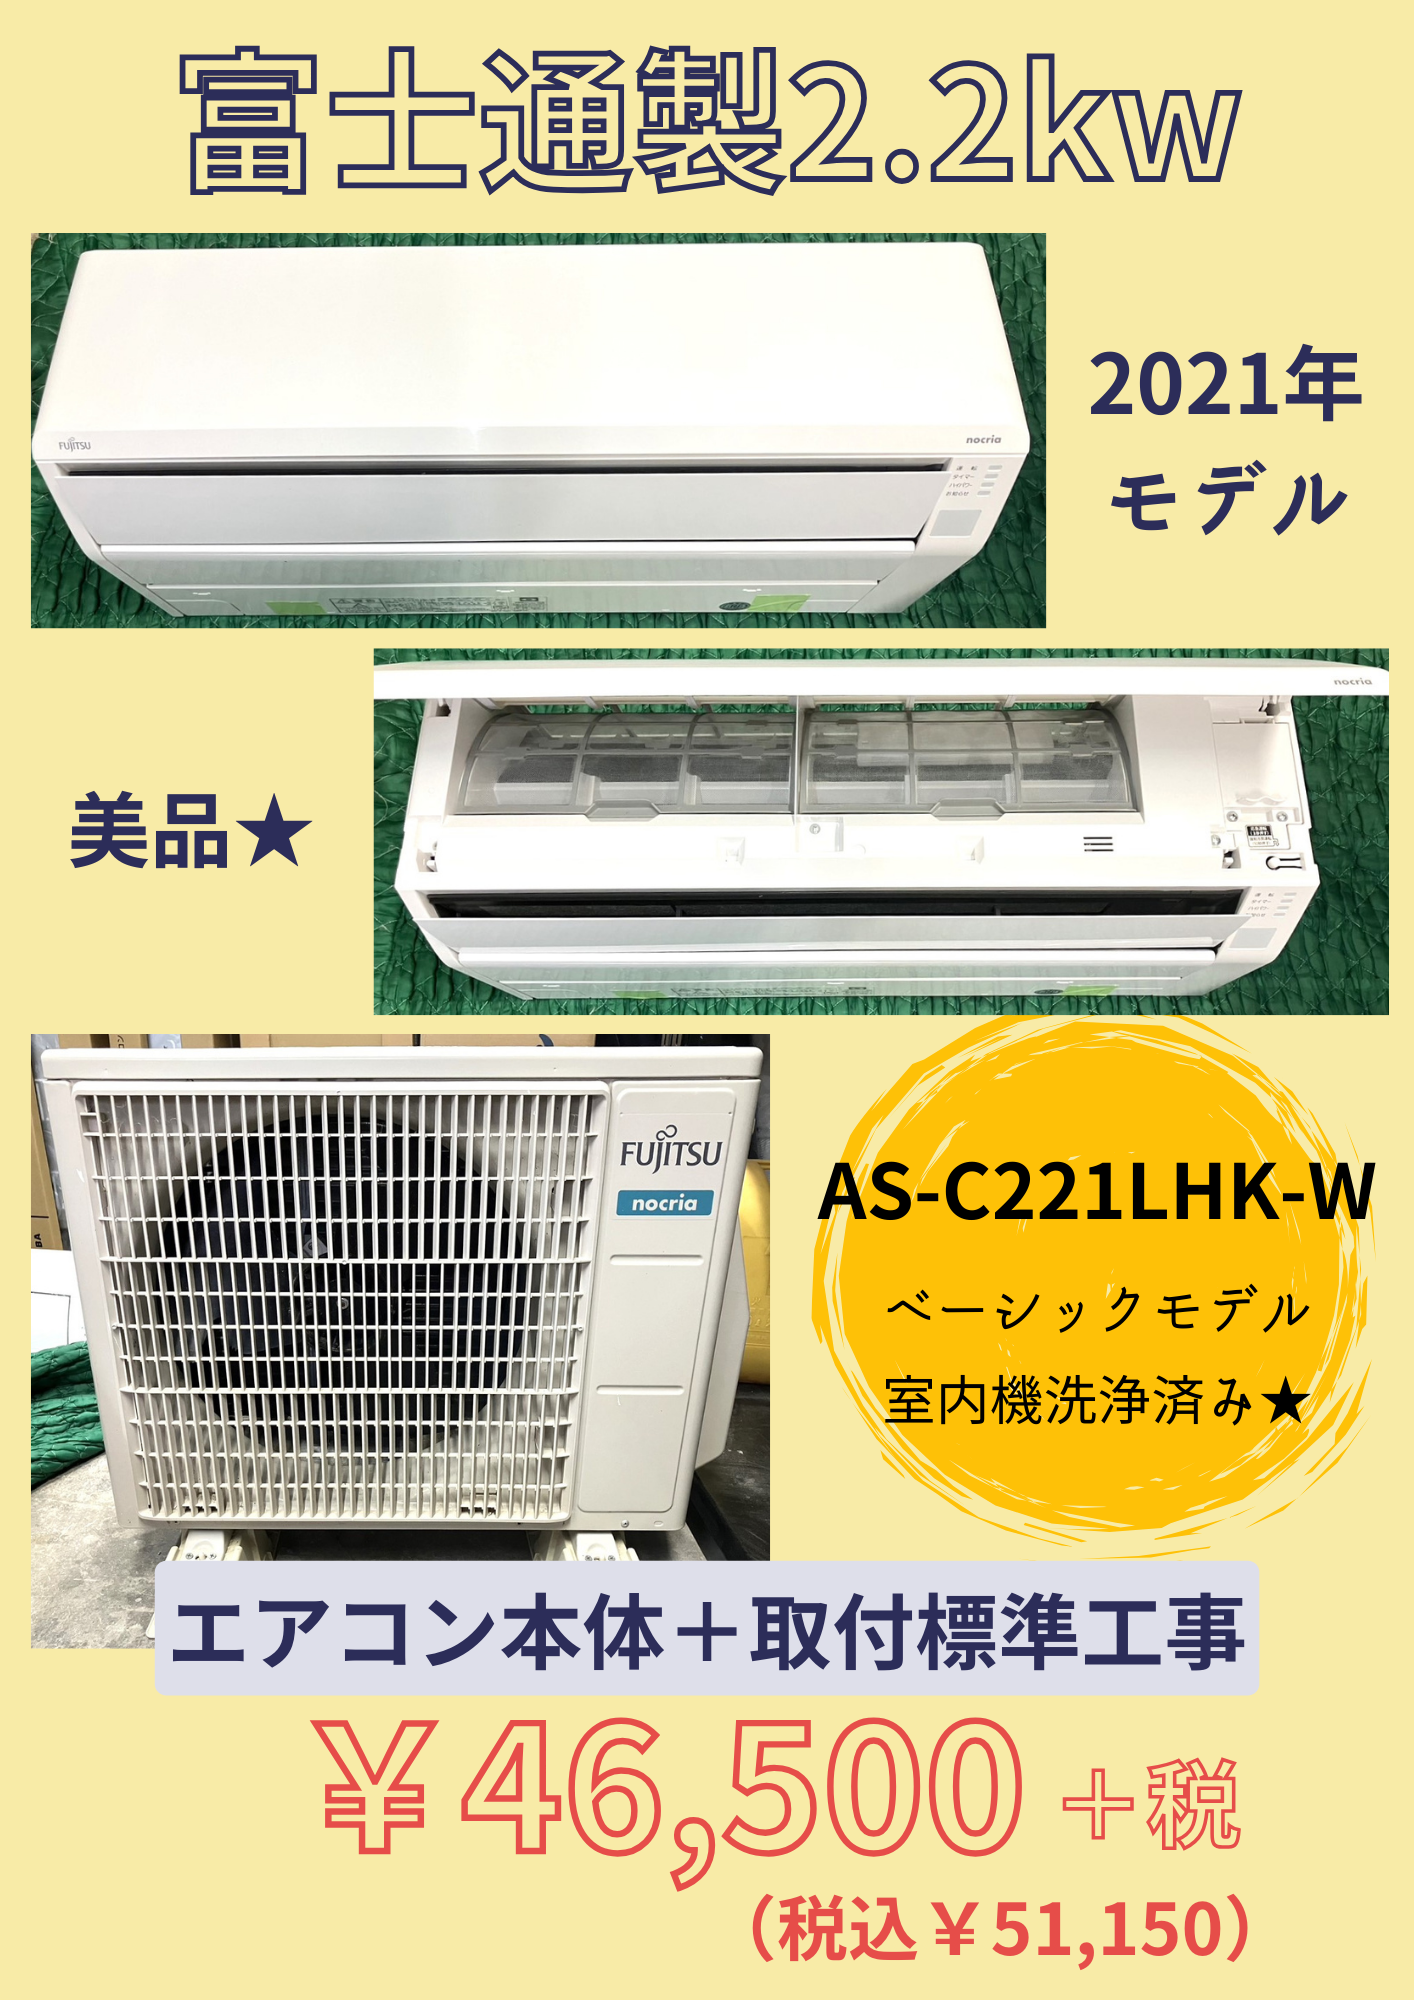 【特注加工】中古エアコン標準工事費込み エアコン